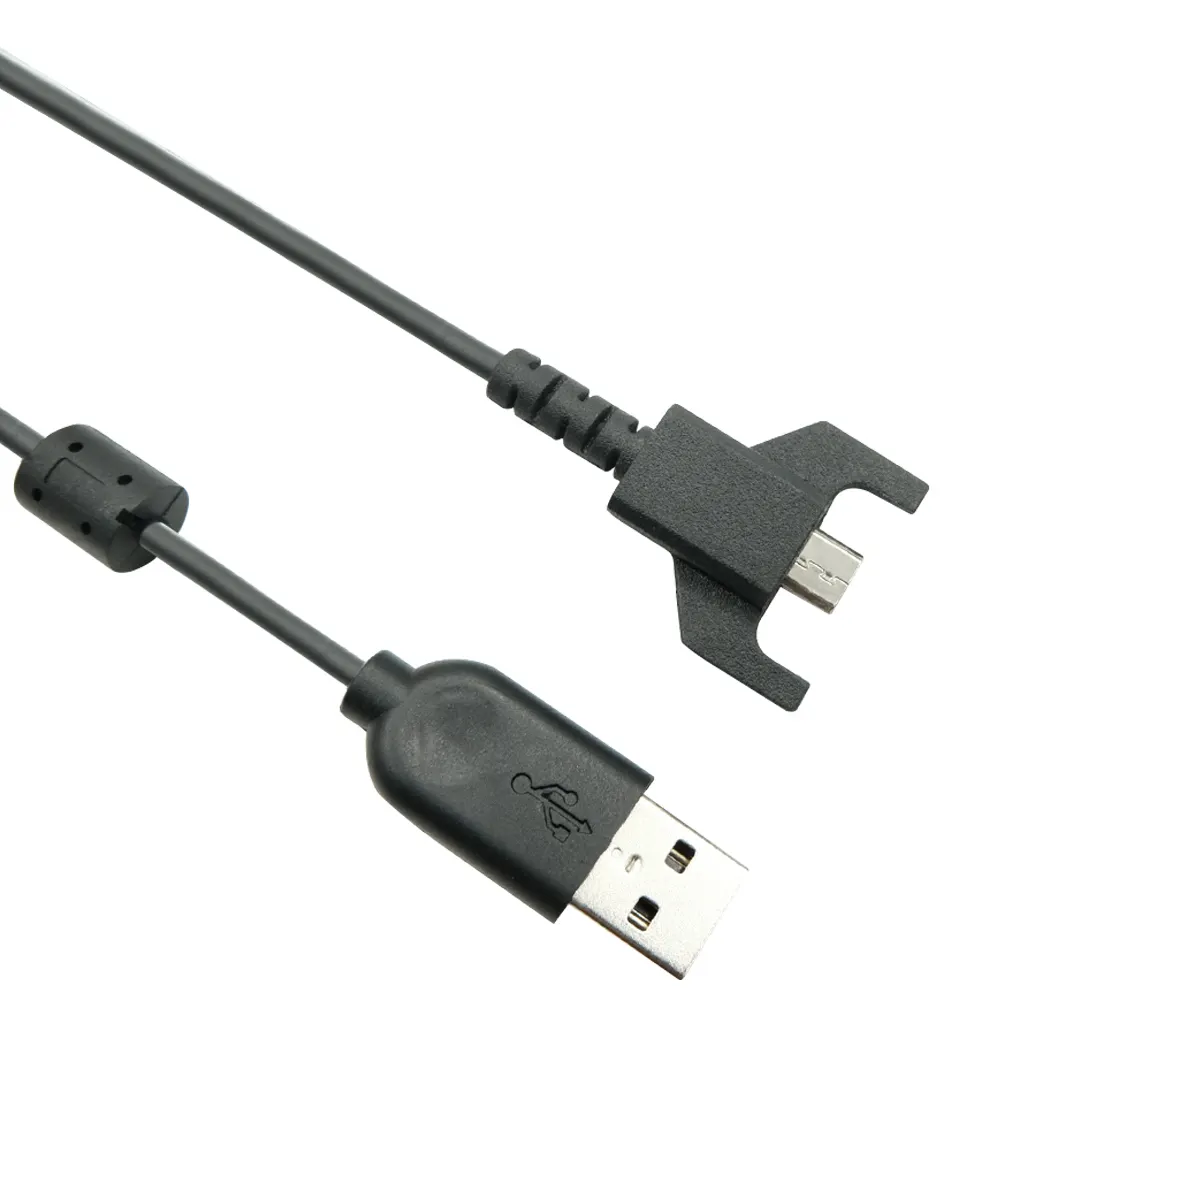 Logitech Cáp sạc USB chính hãng cho Chuột chơi game G703 G900 G903 G Pro không dây G Pro X Superlight, USB sang Micro USB (Màu Đen)